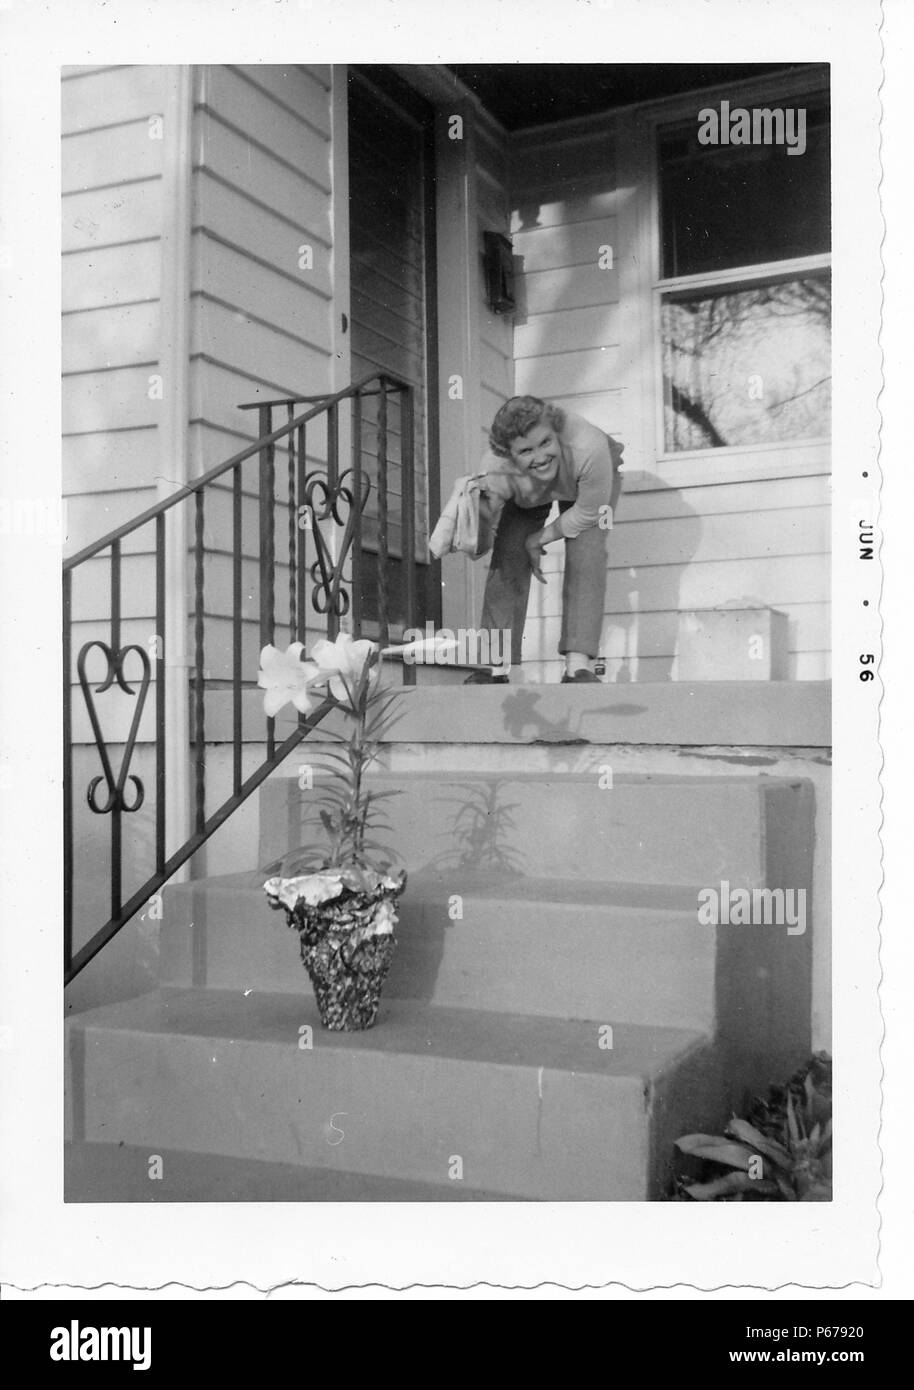 Photographie noir et blanc, tourné à partir d'un angle faible, montrant un sourire, blonde, femme aux cheveux bouclés, porter un pantalon et la tenue de documents dans une main, en se penchant à la taille, en haut d'un petit escalier menant à la porte extérieure d'une maison, avec un grand, en pot, Lis de Pâques (Lilium longiflorum) visible sur une contremarche inférieure, probablement photographié dans l'Ohio, en juin 1956. () Banque D'Images